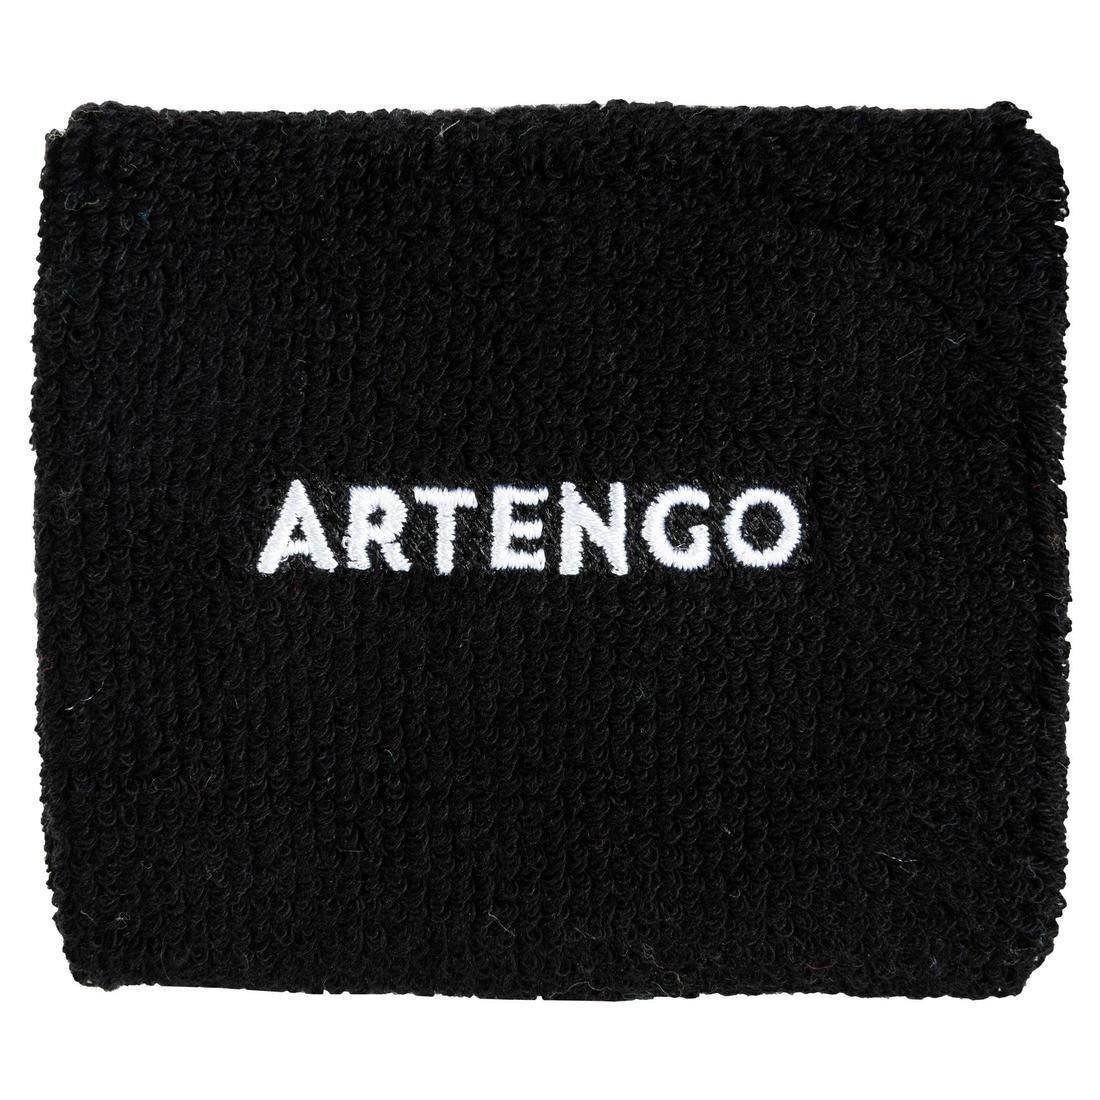 ARTENGO - Tennis Wristband Tp 100, White